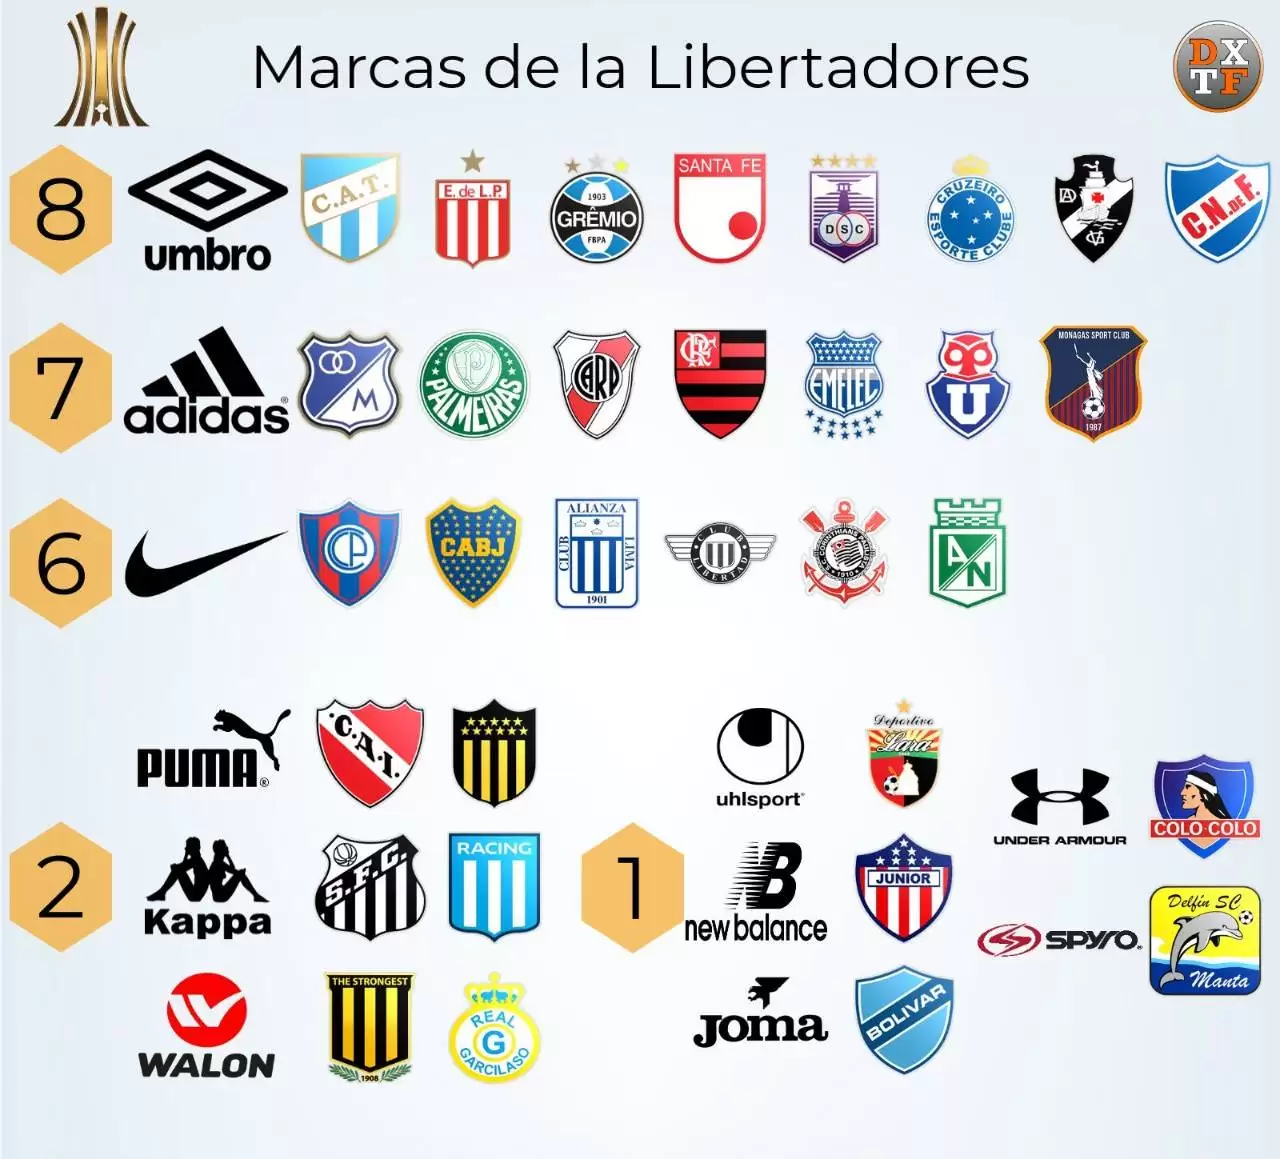 ataque Alarmante perjudicar Con Umbro y adidas a la cabeza estas son las marcas de todos los equipos de  la CONMEBOL Libertadores | Marketing Registrado